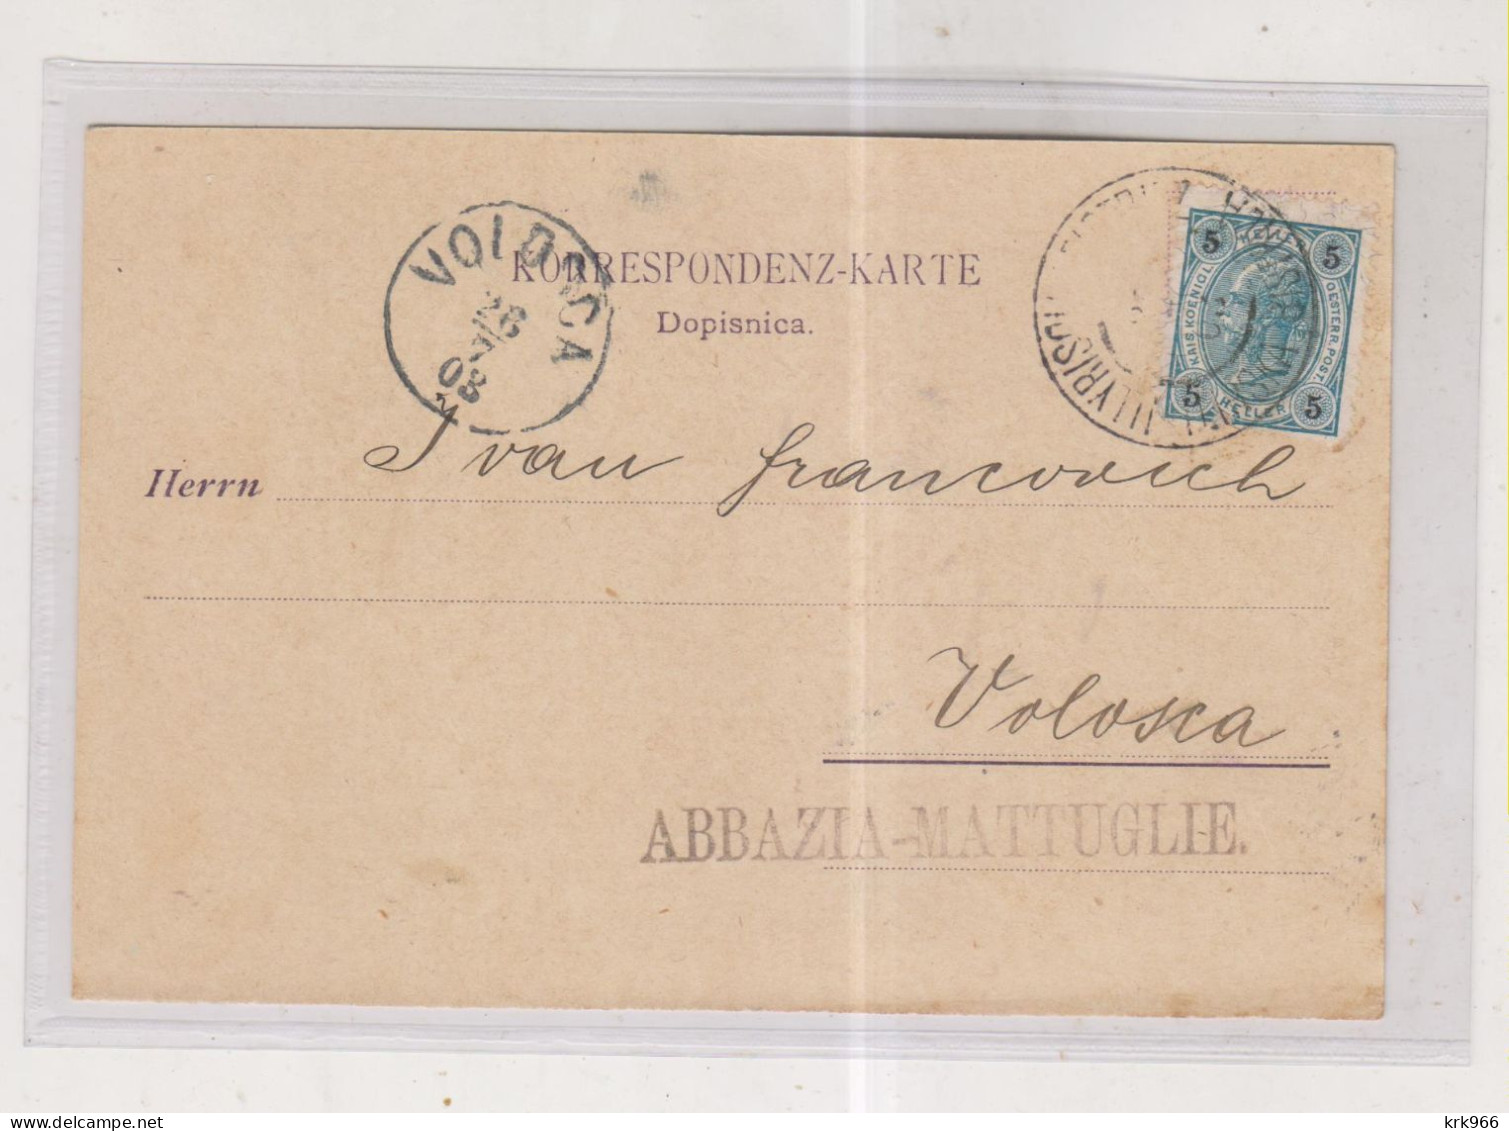 SLOVENIA AUSTRIA 1903 ILIRSKA BISTRICA Nice Postcard To Volosca Volosko Croatia - Slovénie